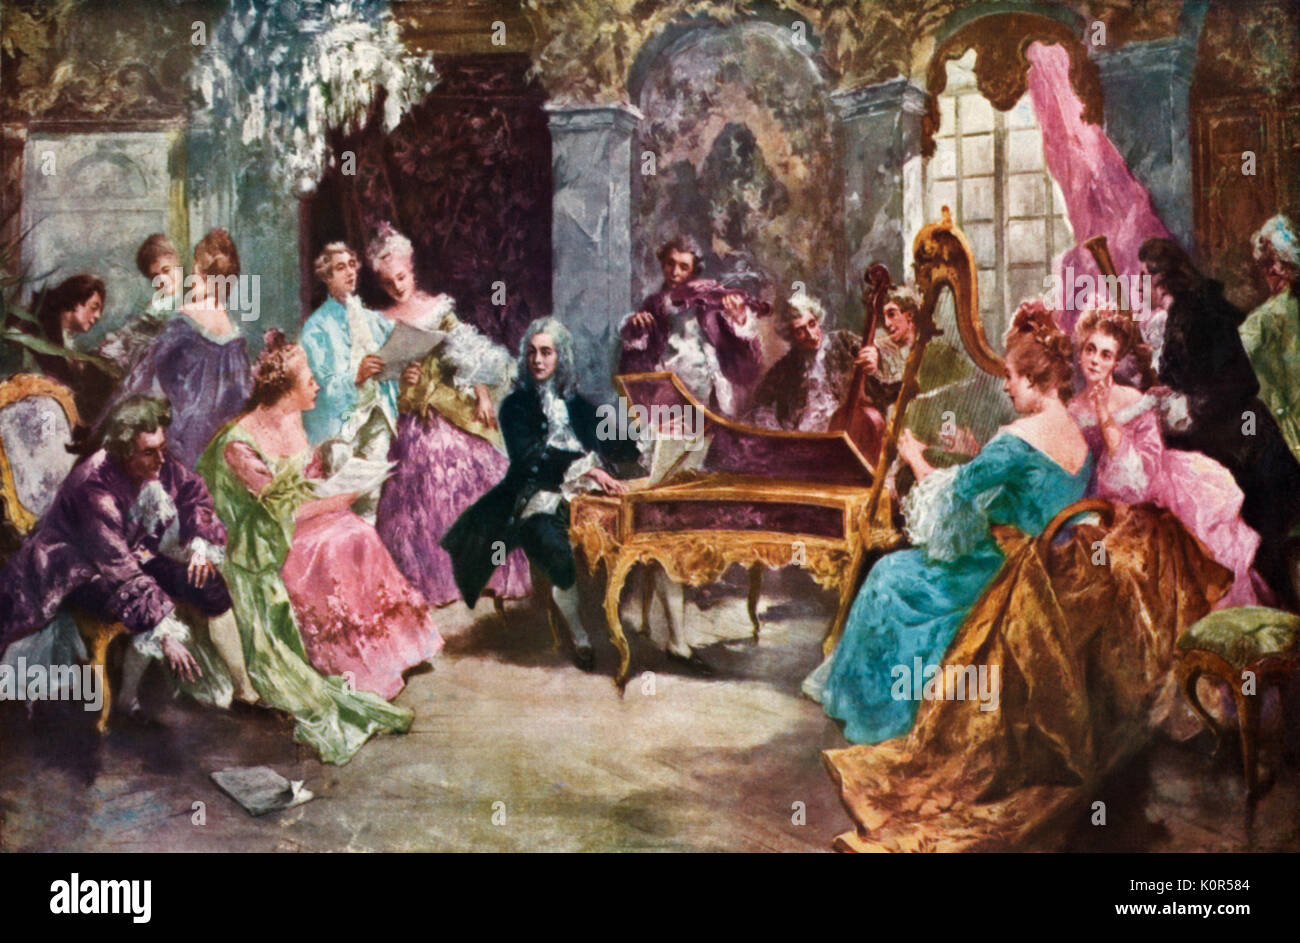 Händel auf der Tastatur, die mit einer Gesellschaft Publikum vor. Georg Friedrich Händel. Deutsch-englische Komponist. Malerei in London, Künstler nicht bekannt. 1685 - 1759 Stockfoto